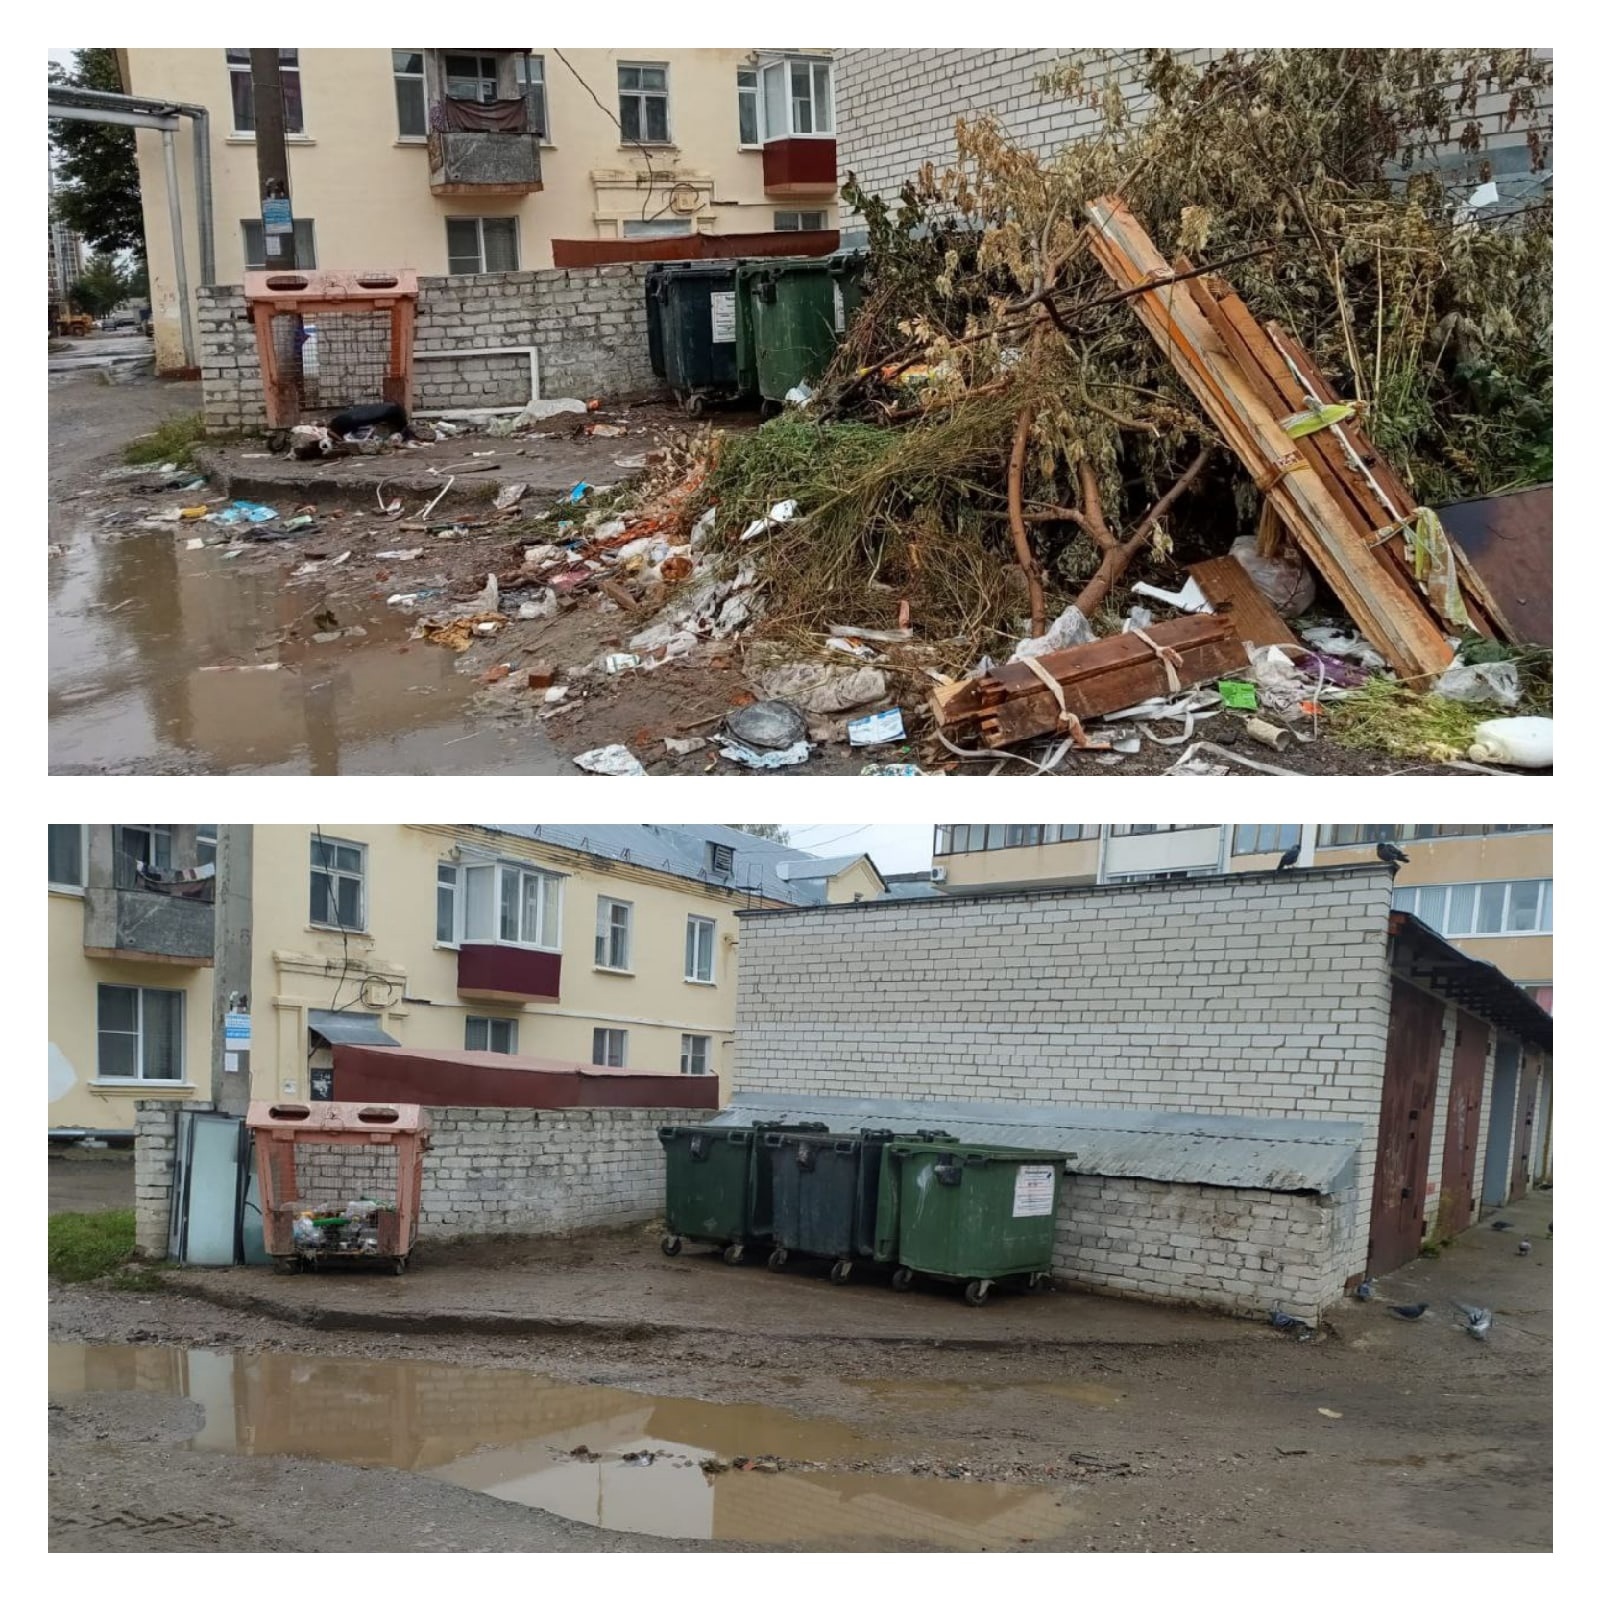 С улиц Йошкар-Олы убирают кучи строительного мусора